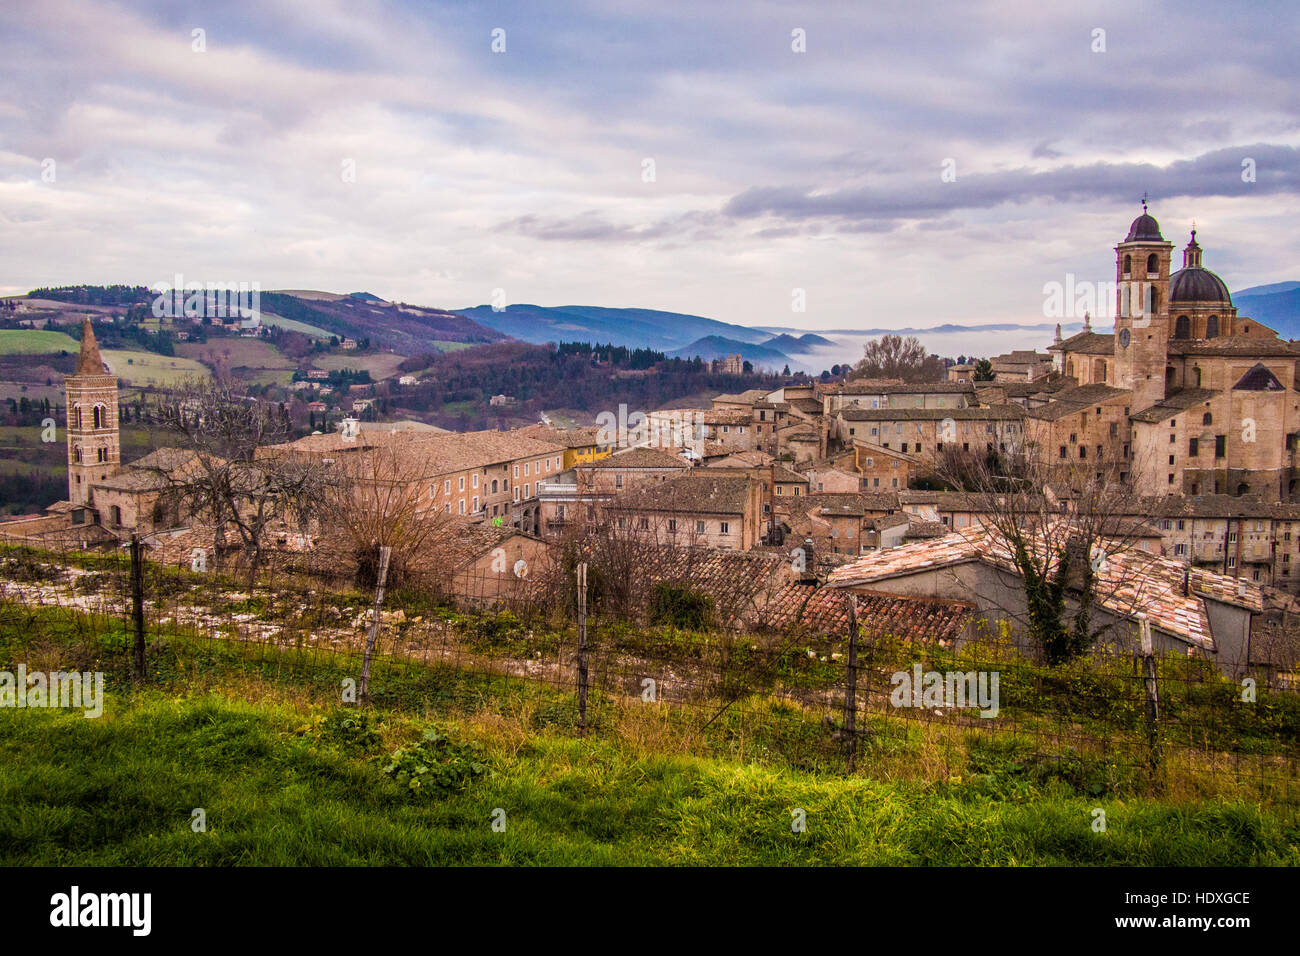 Urbino, une ville médiévale fortifiée dans la région des Marches de l'Italie. Banque D'Images